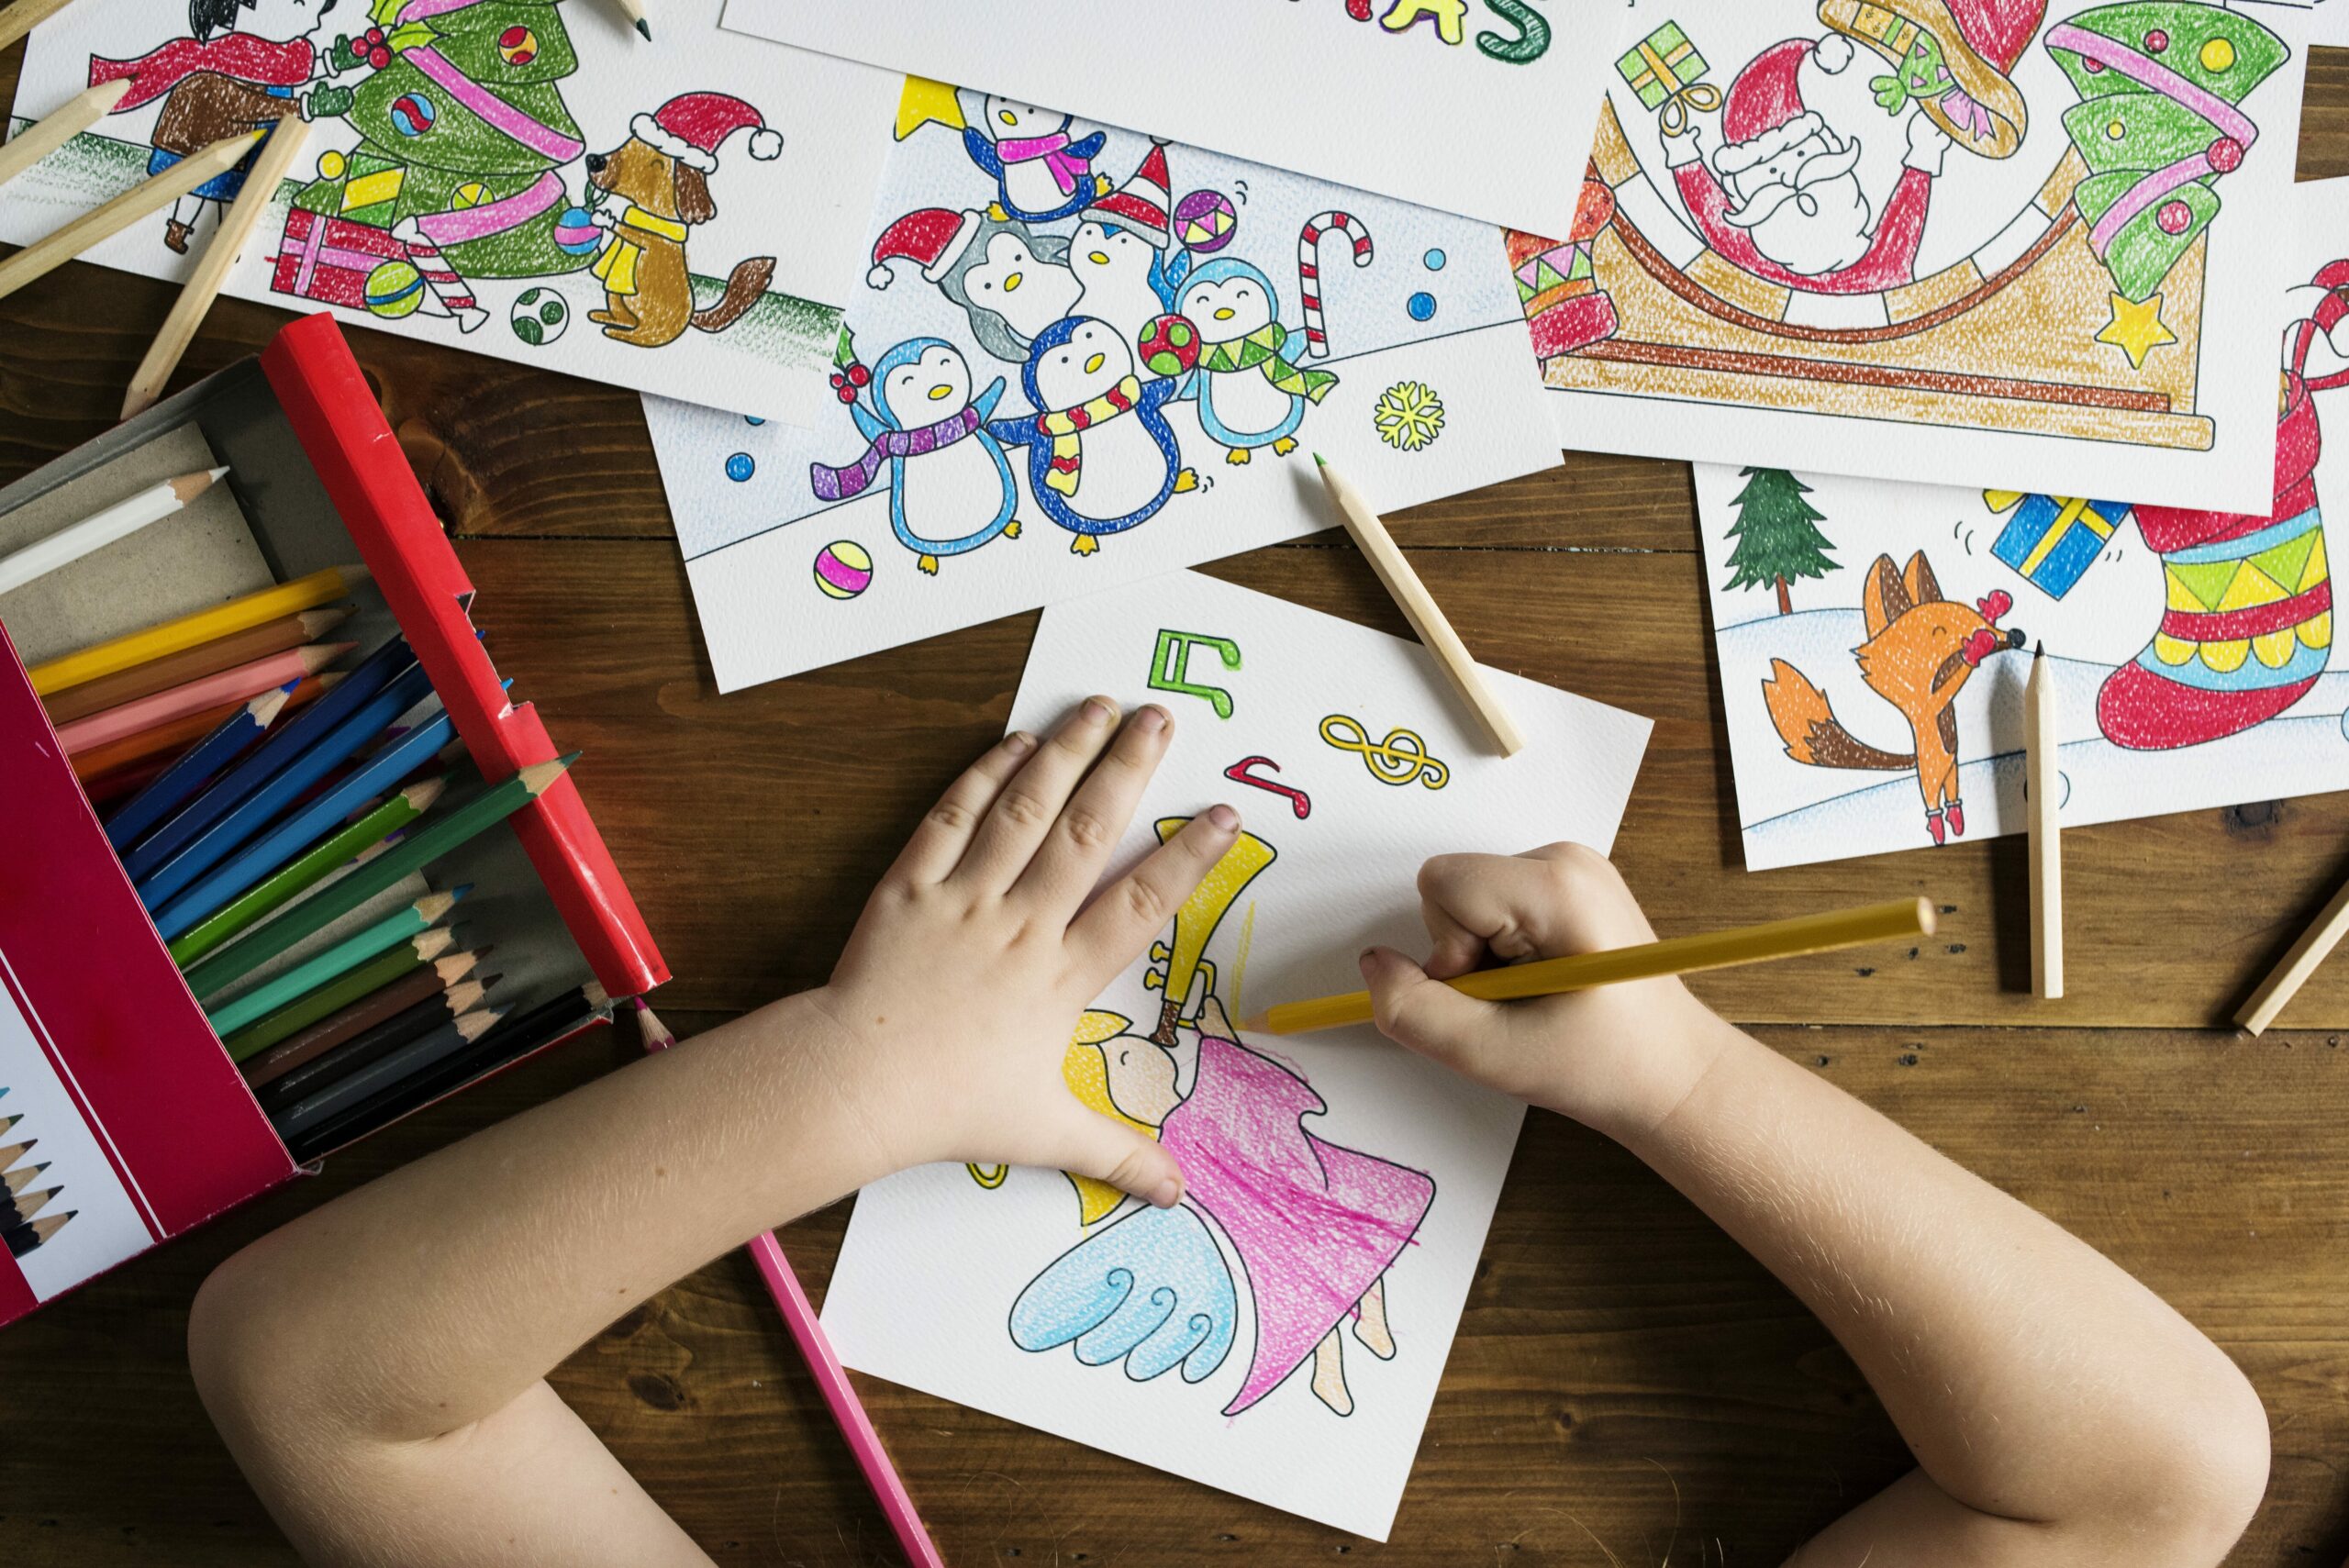 Activité pour enfants : occuper ses enfants avec du coloriage !